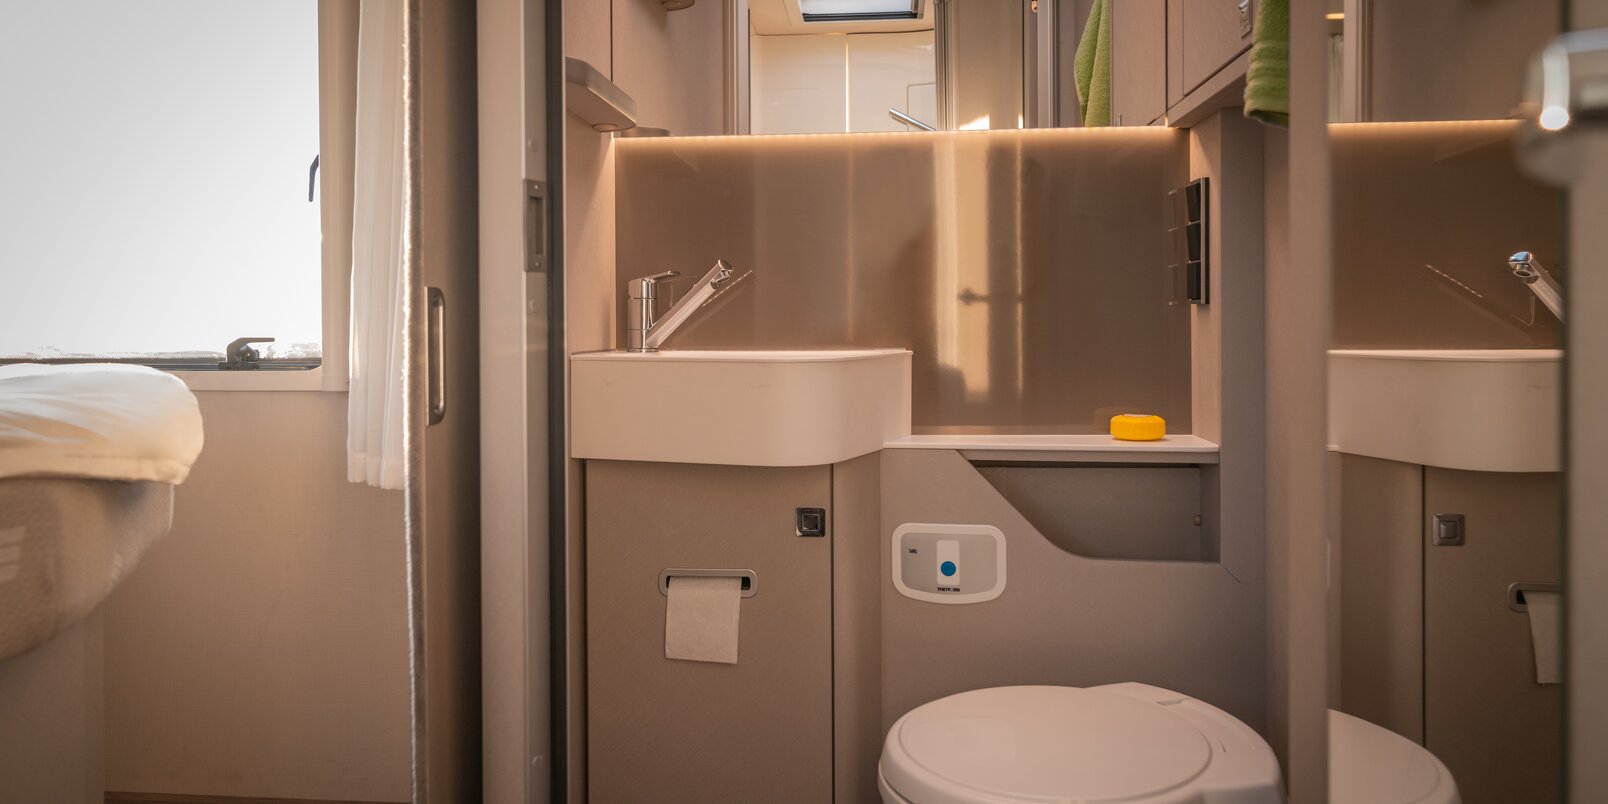 Spiegel, Waschbecken, Ablageflächen und Toilette im Bad des HYMER-Reisemobils Tramp S